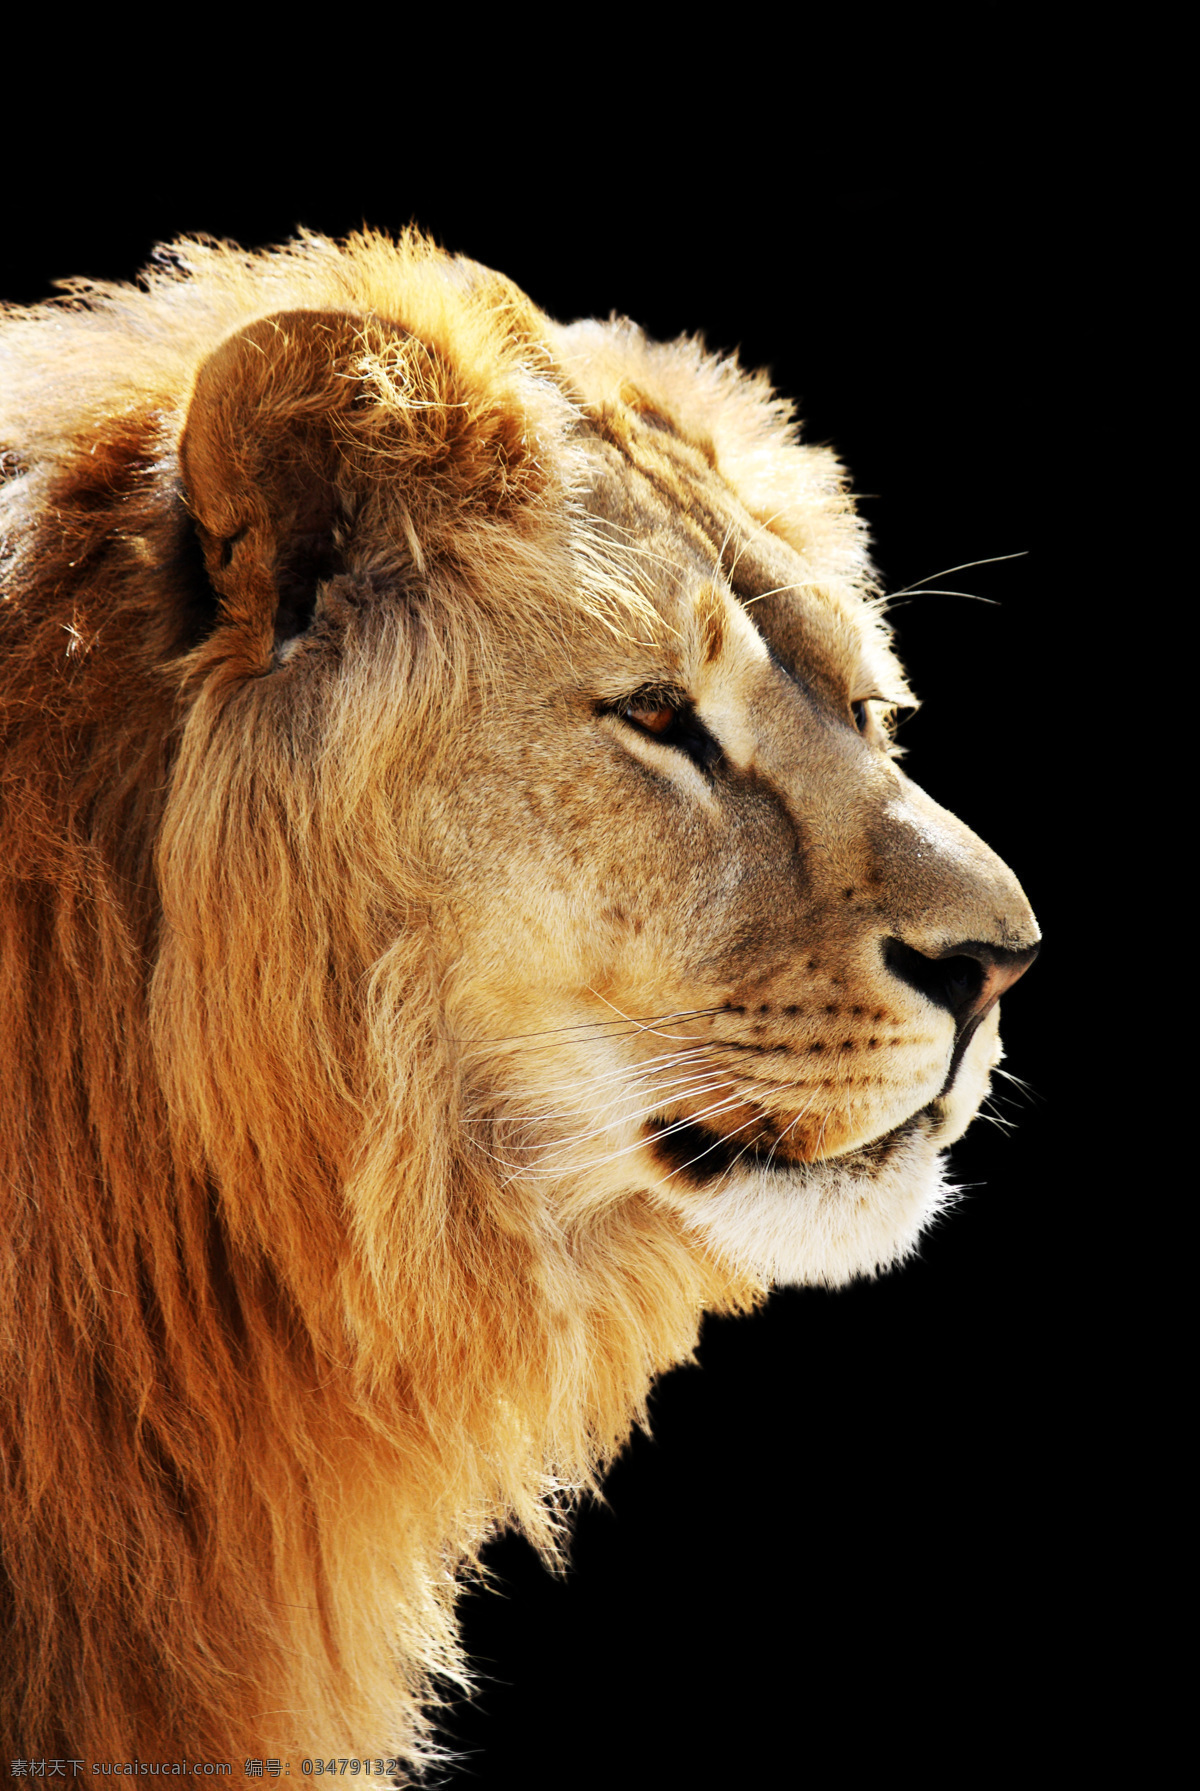 野兽 狮子 头像 凶猛 动物 头像图片 生物世界 野生动物